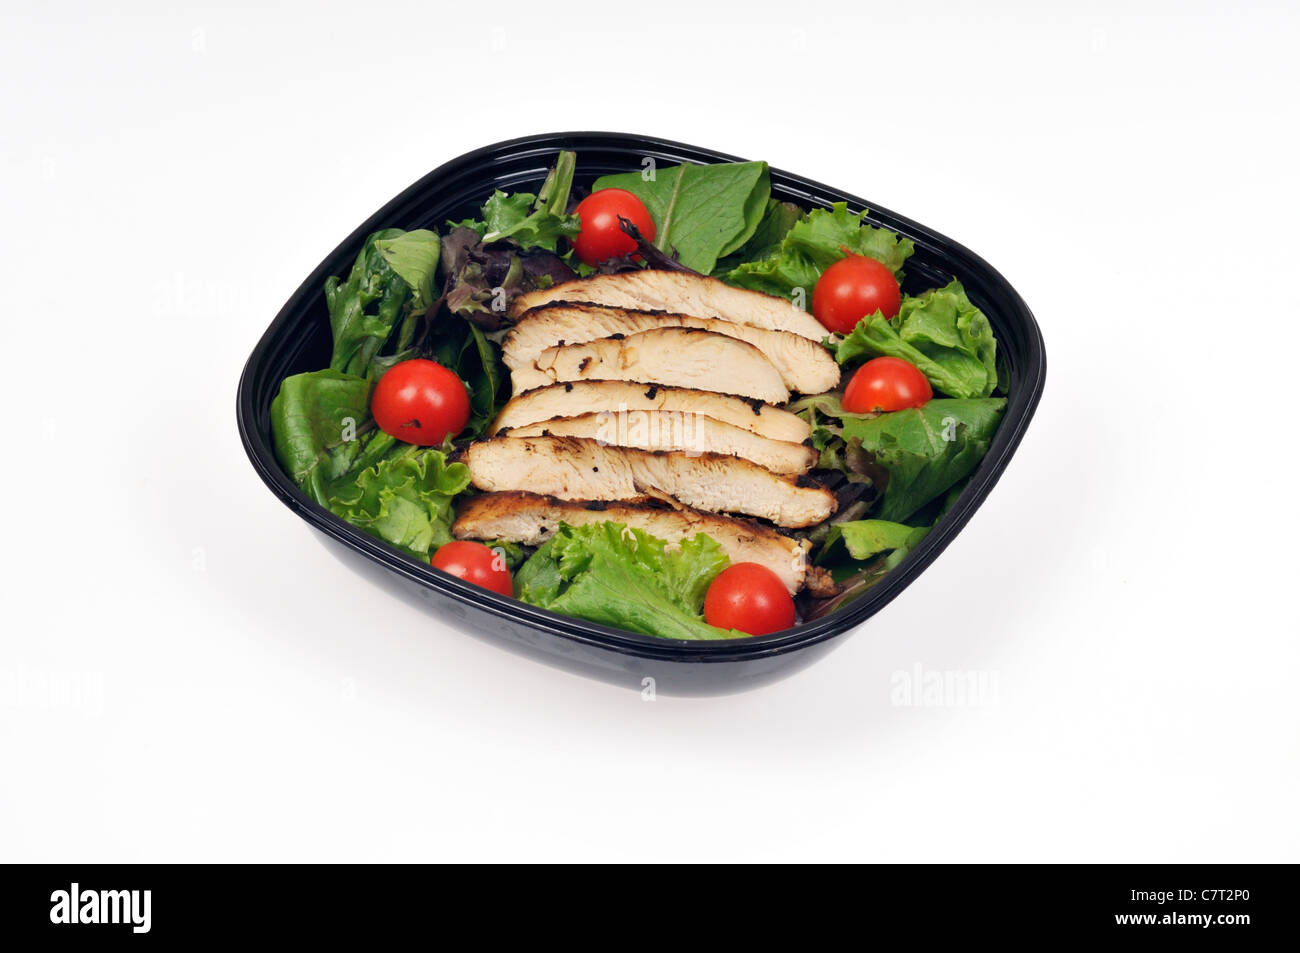 Streifen von gegrilltem Hähnchen auf einem Bett von Salat und Kirschtomaten in einem Salat in schwarzen Behälter auf weißem Hintergrund Ausschnitt. Stockfoto